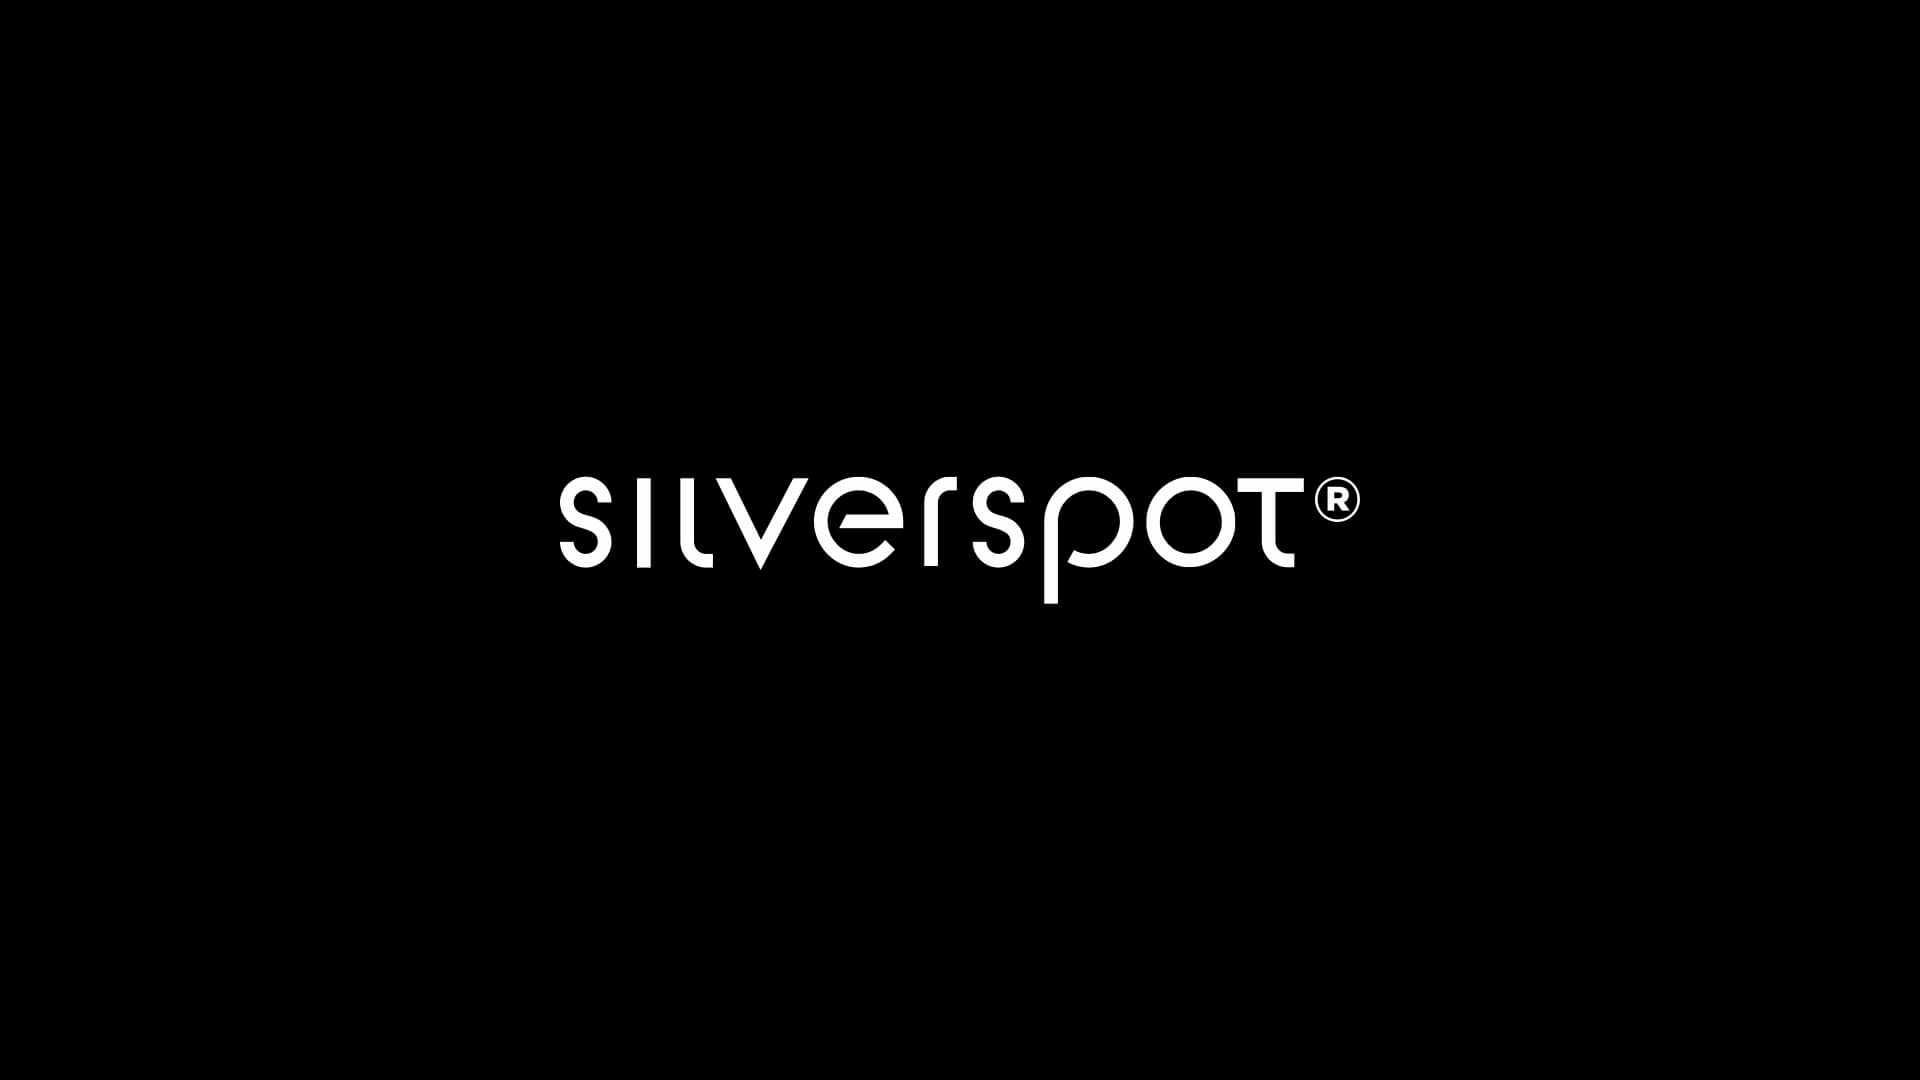 logos_silverspot.jpg